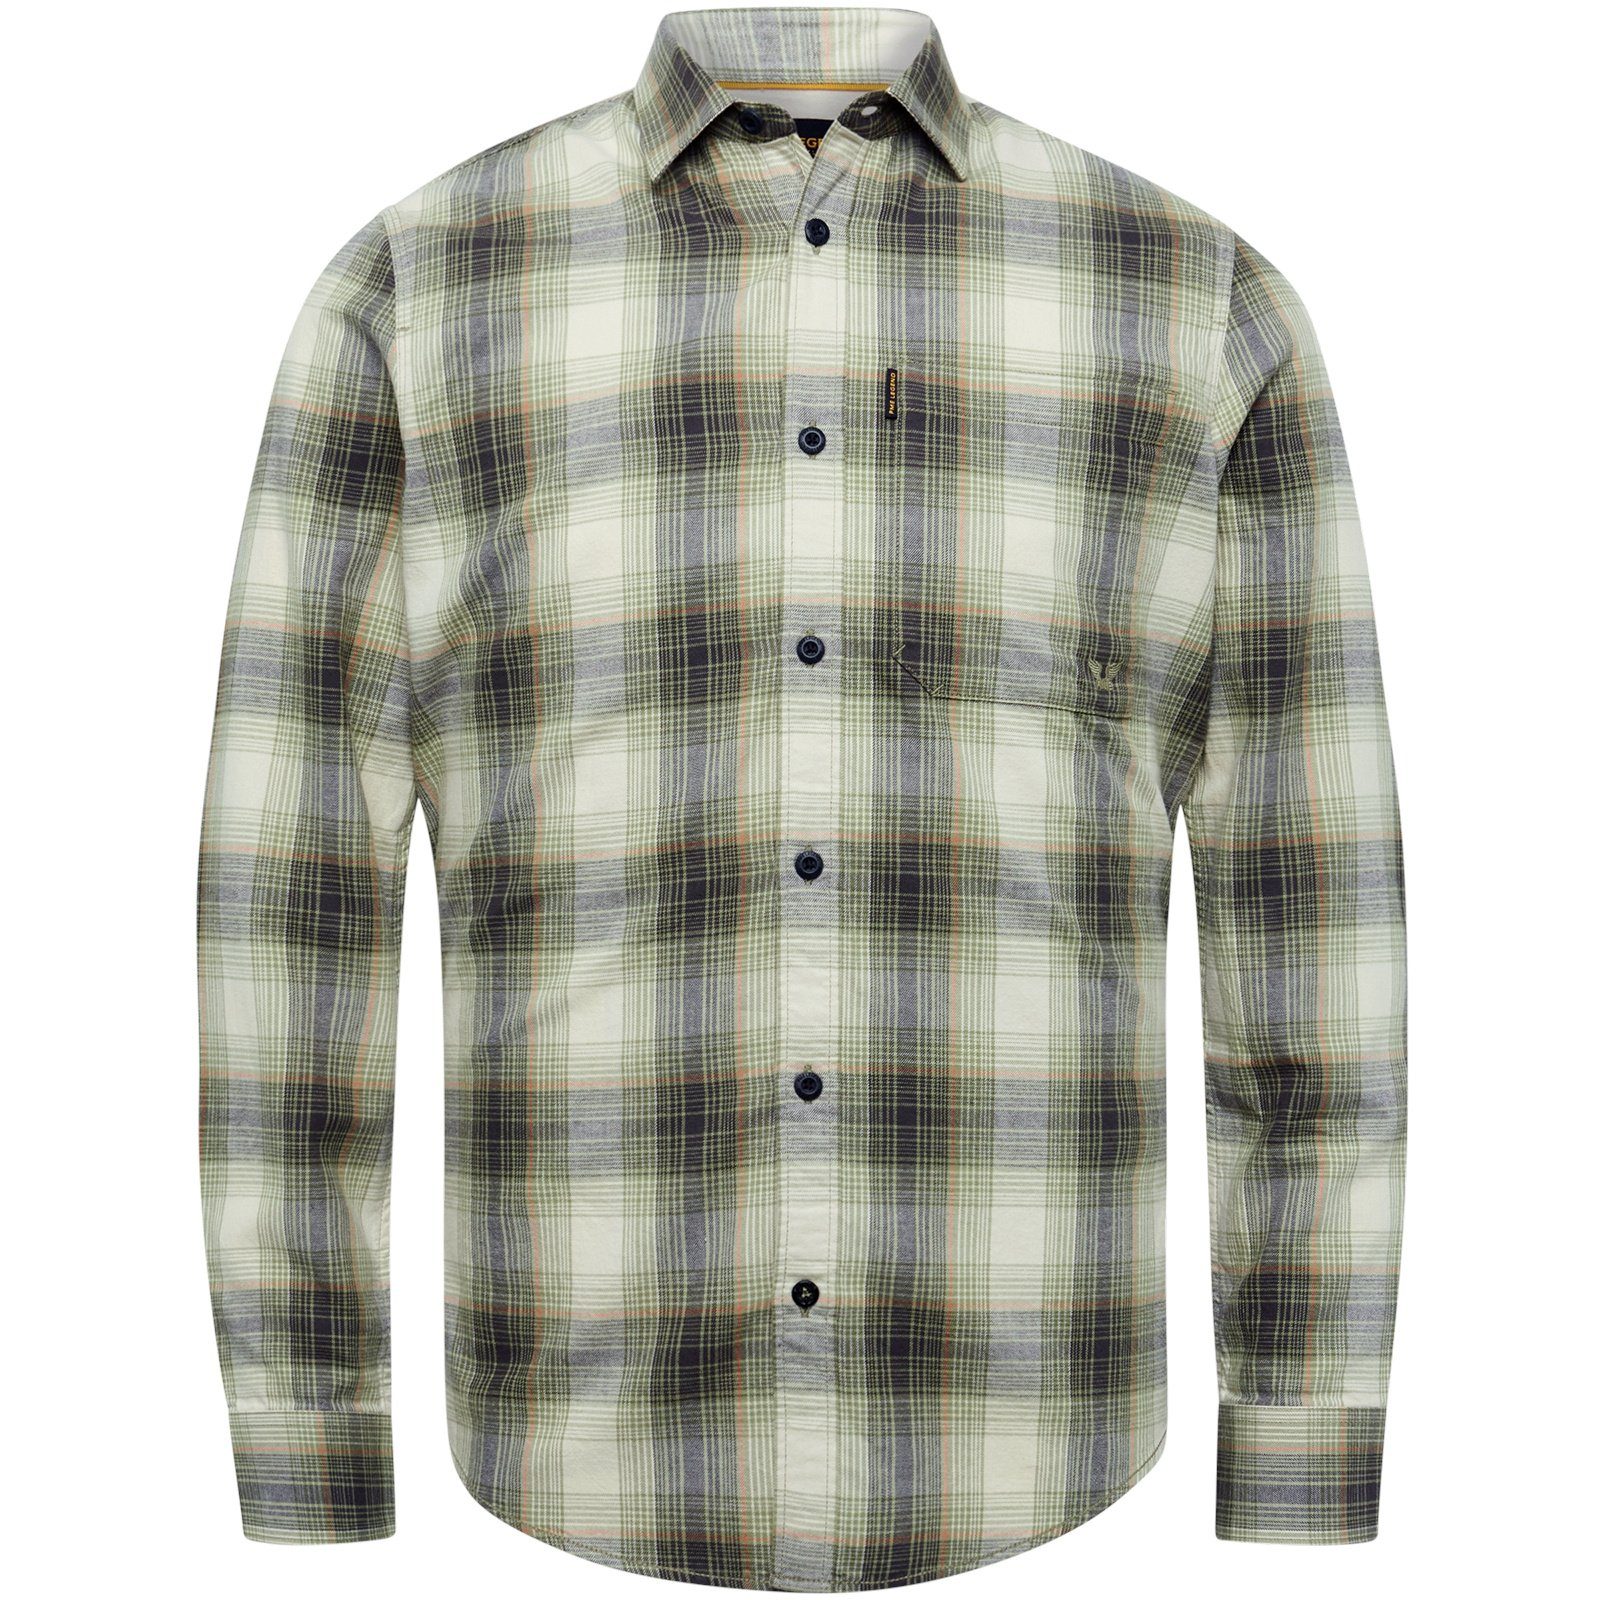 LEGEND grün Ctn Check Shirt Sleeve Long & Twill Yd T-Shirt PME Langarmshirt